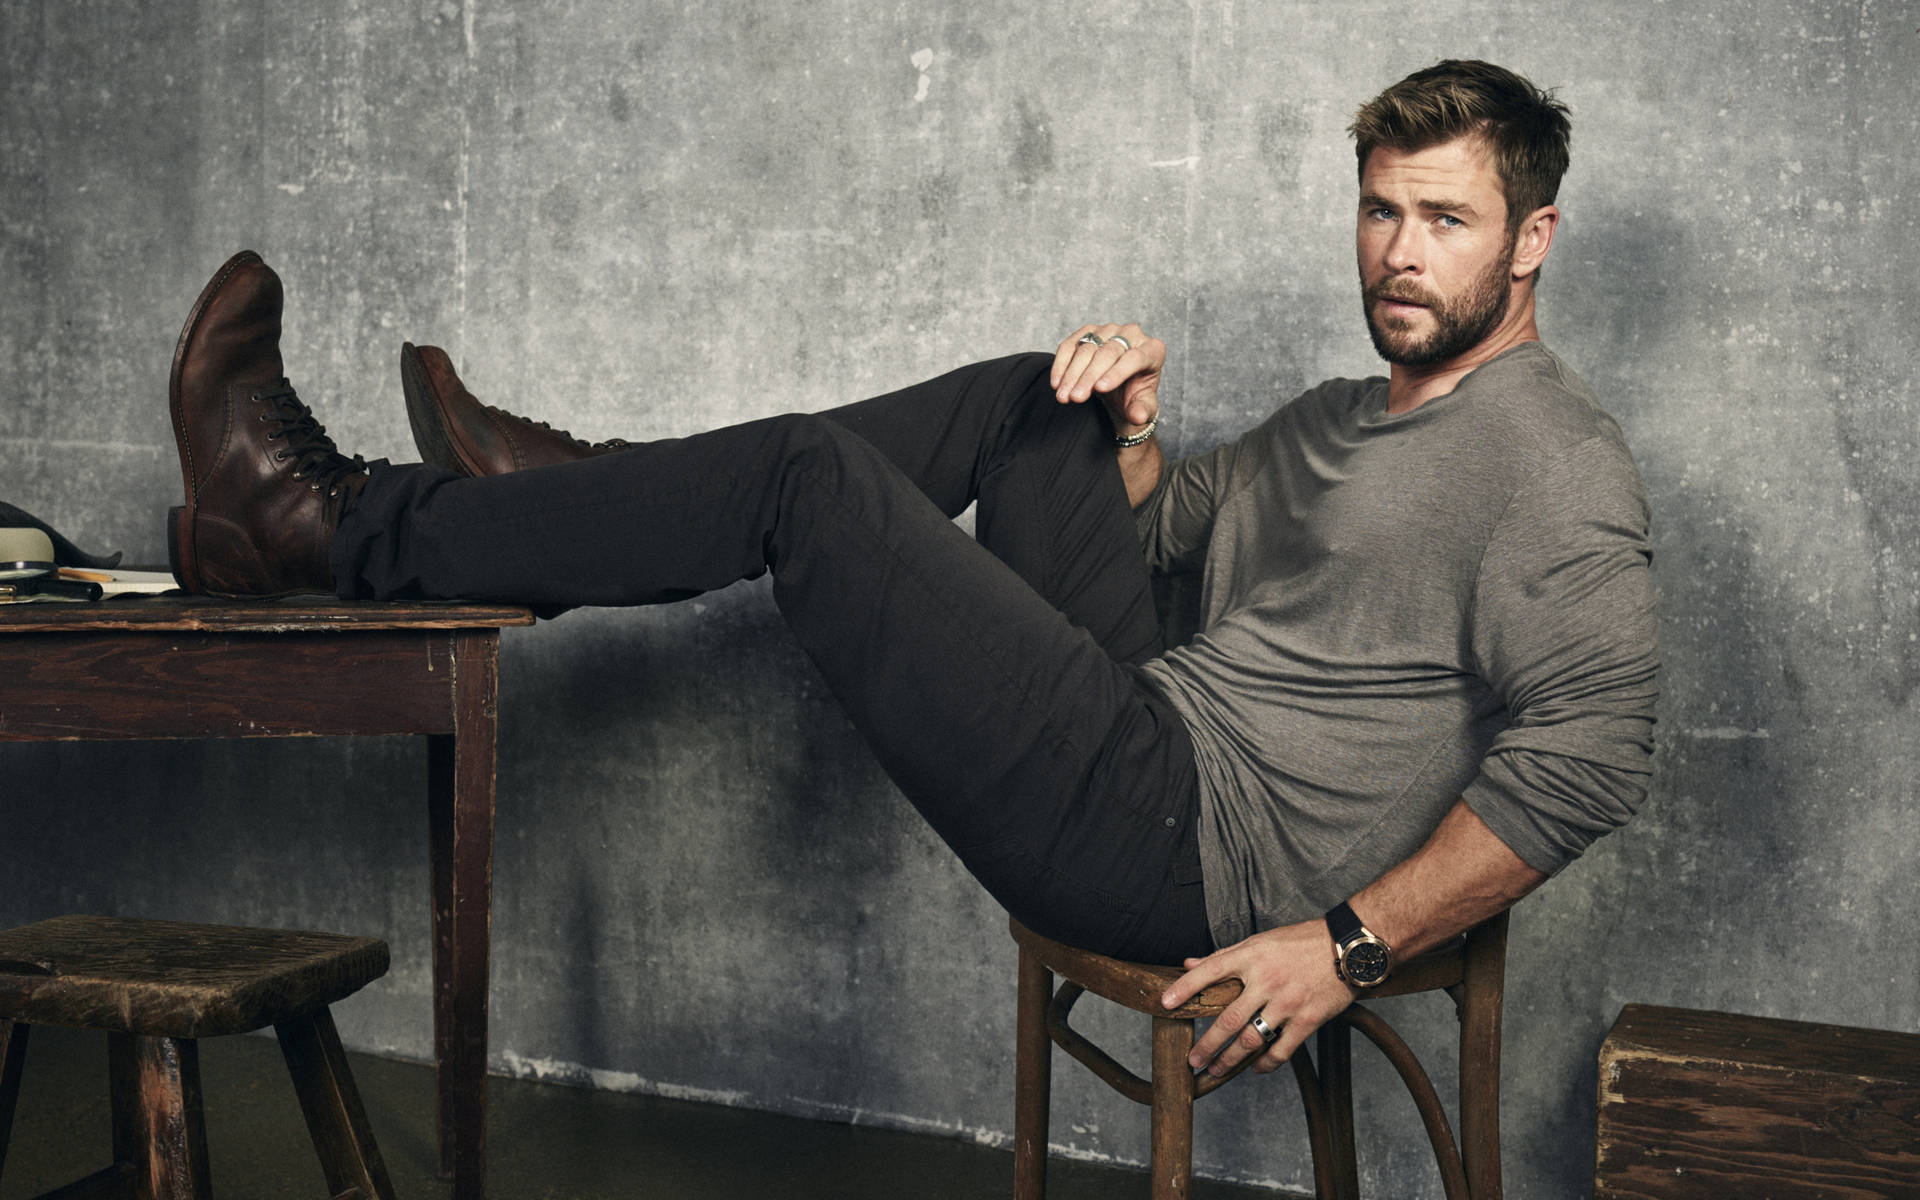 Chris Hemsworth graces the cover of Men's Journal magazine Wallpaper